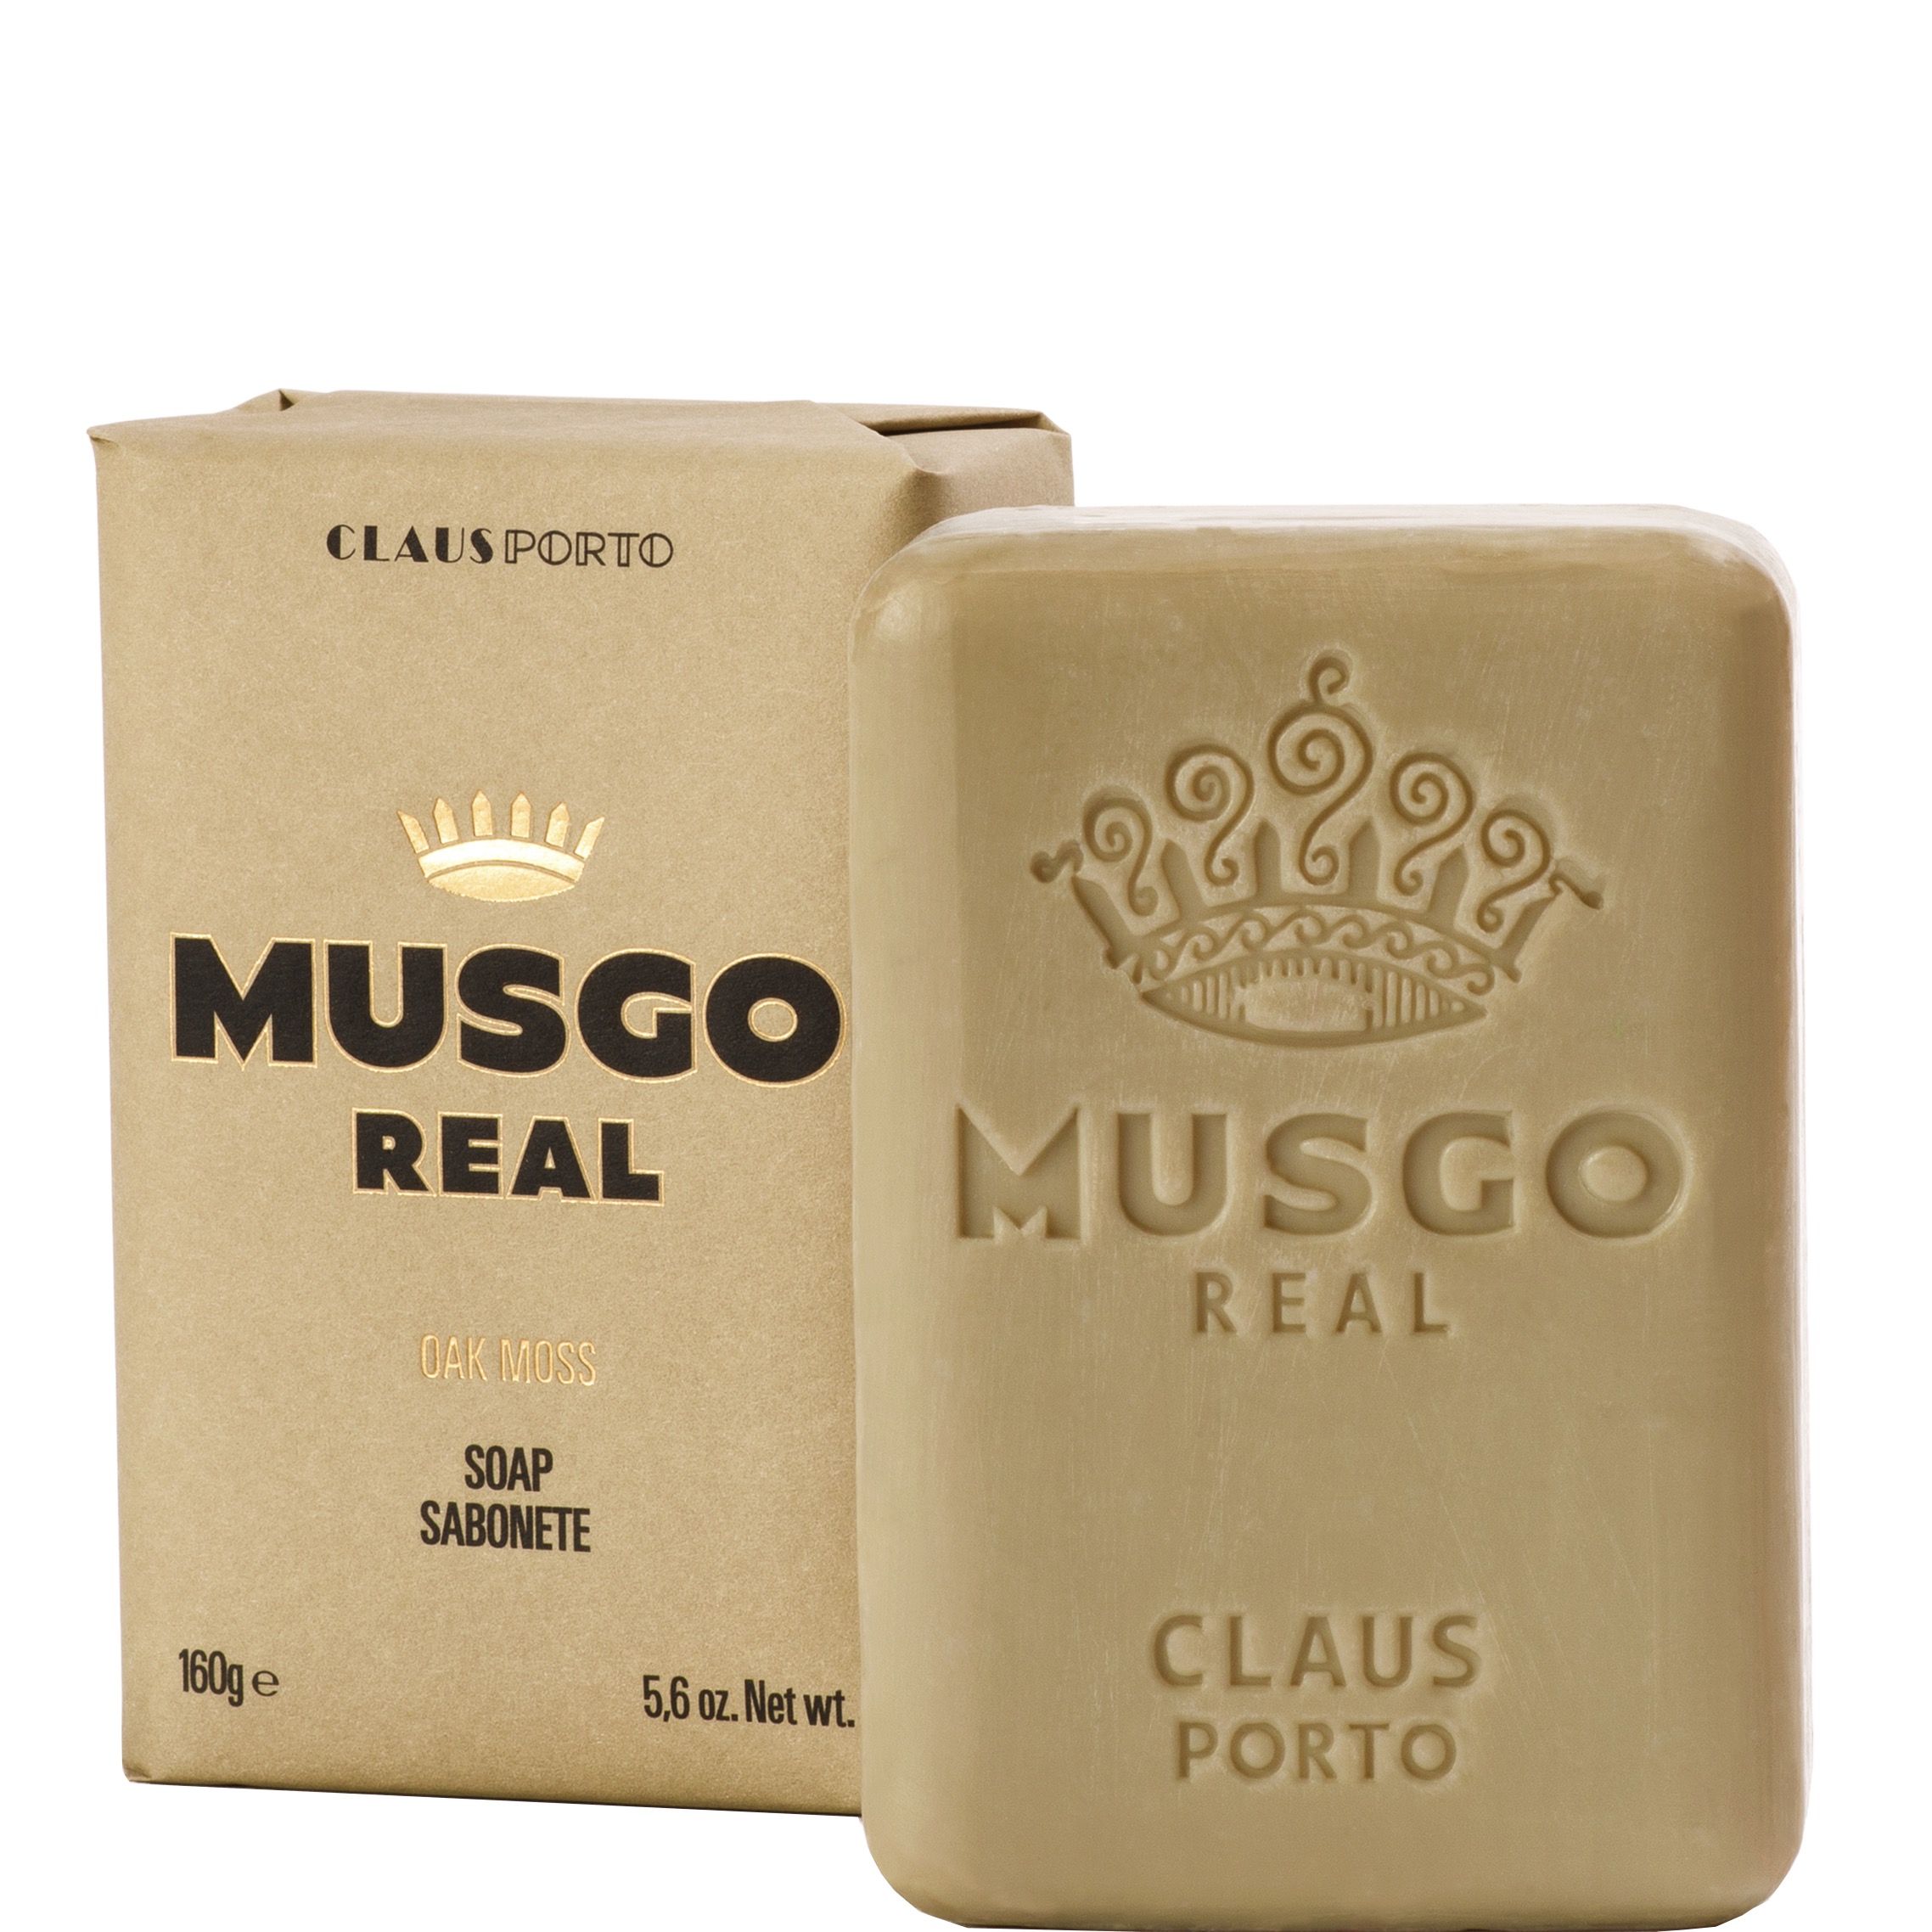 Musgo Real Body Soap Oak Moss 160gr - 1.1 - MR-199EXP002